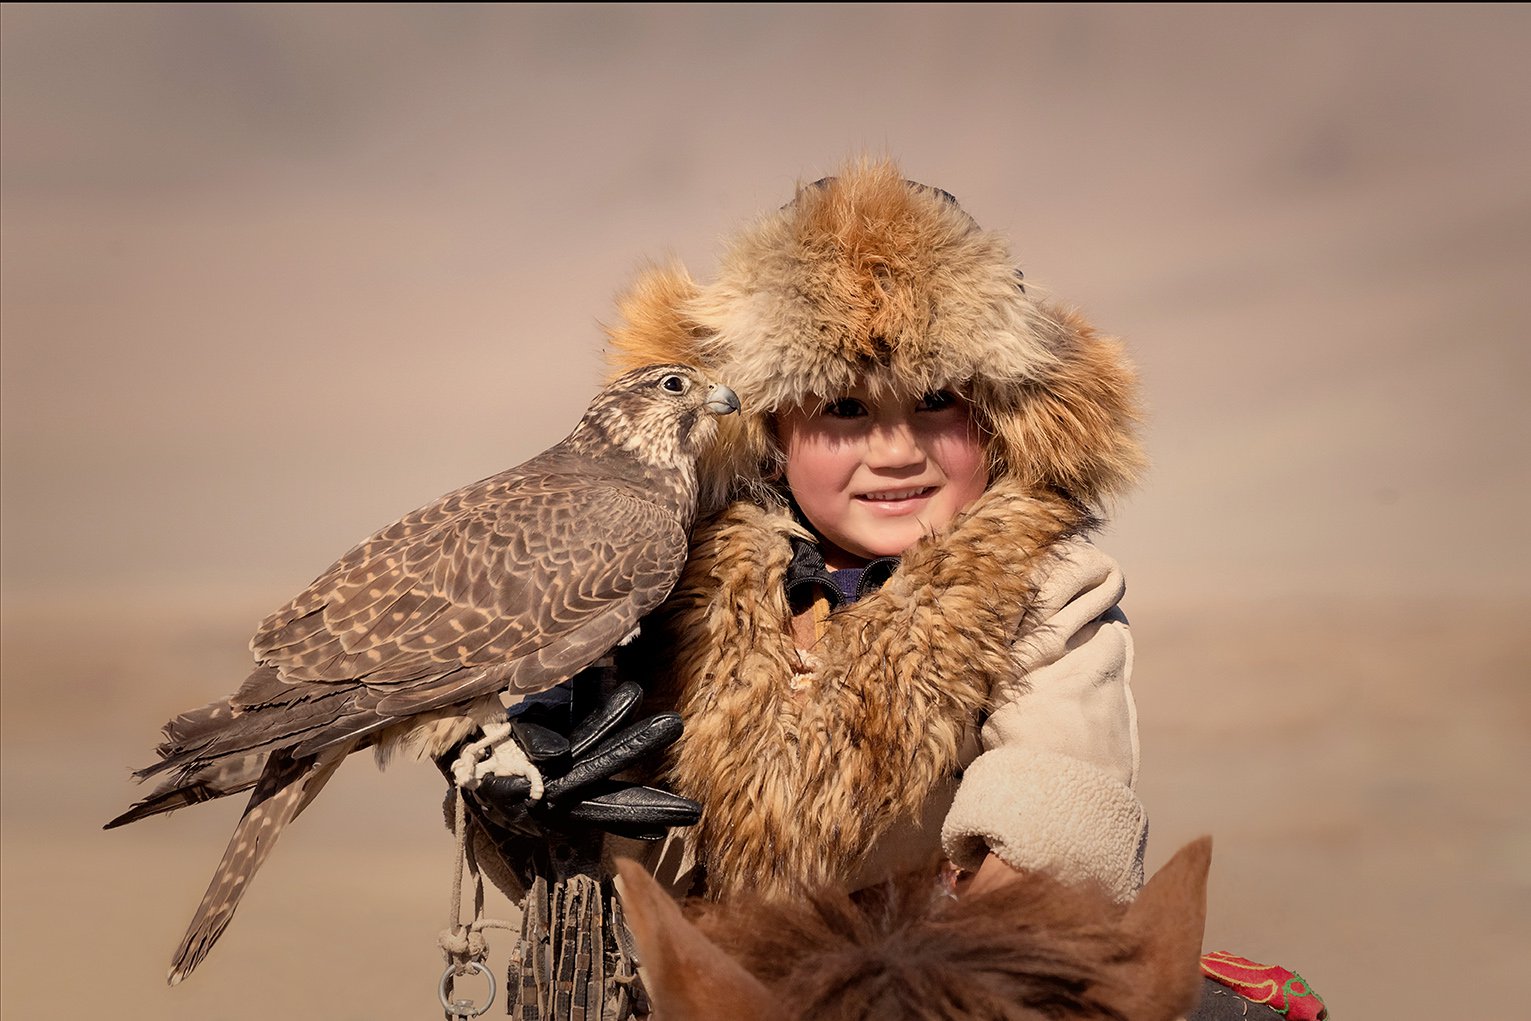 Юный участник фестиваля Golden Eagle Festival Mongolia